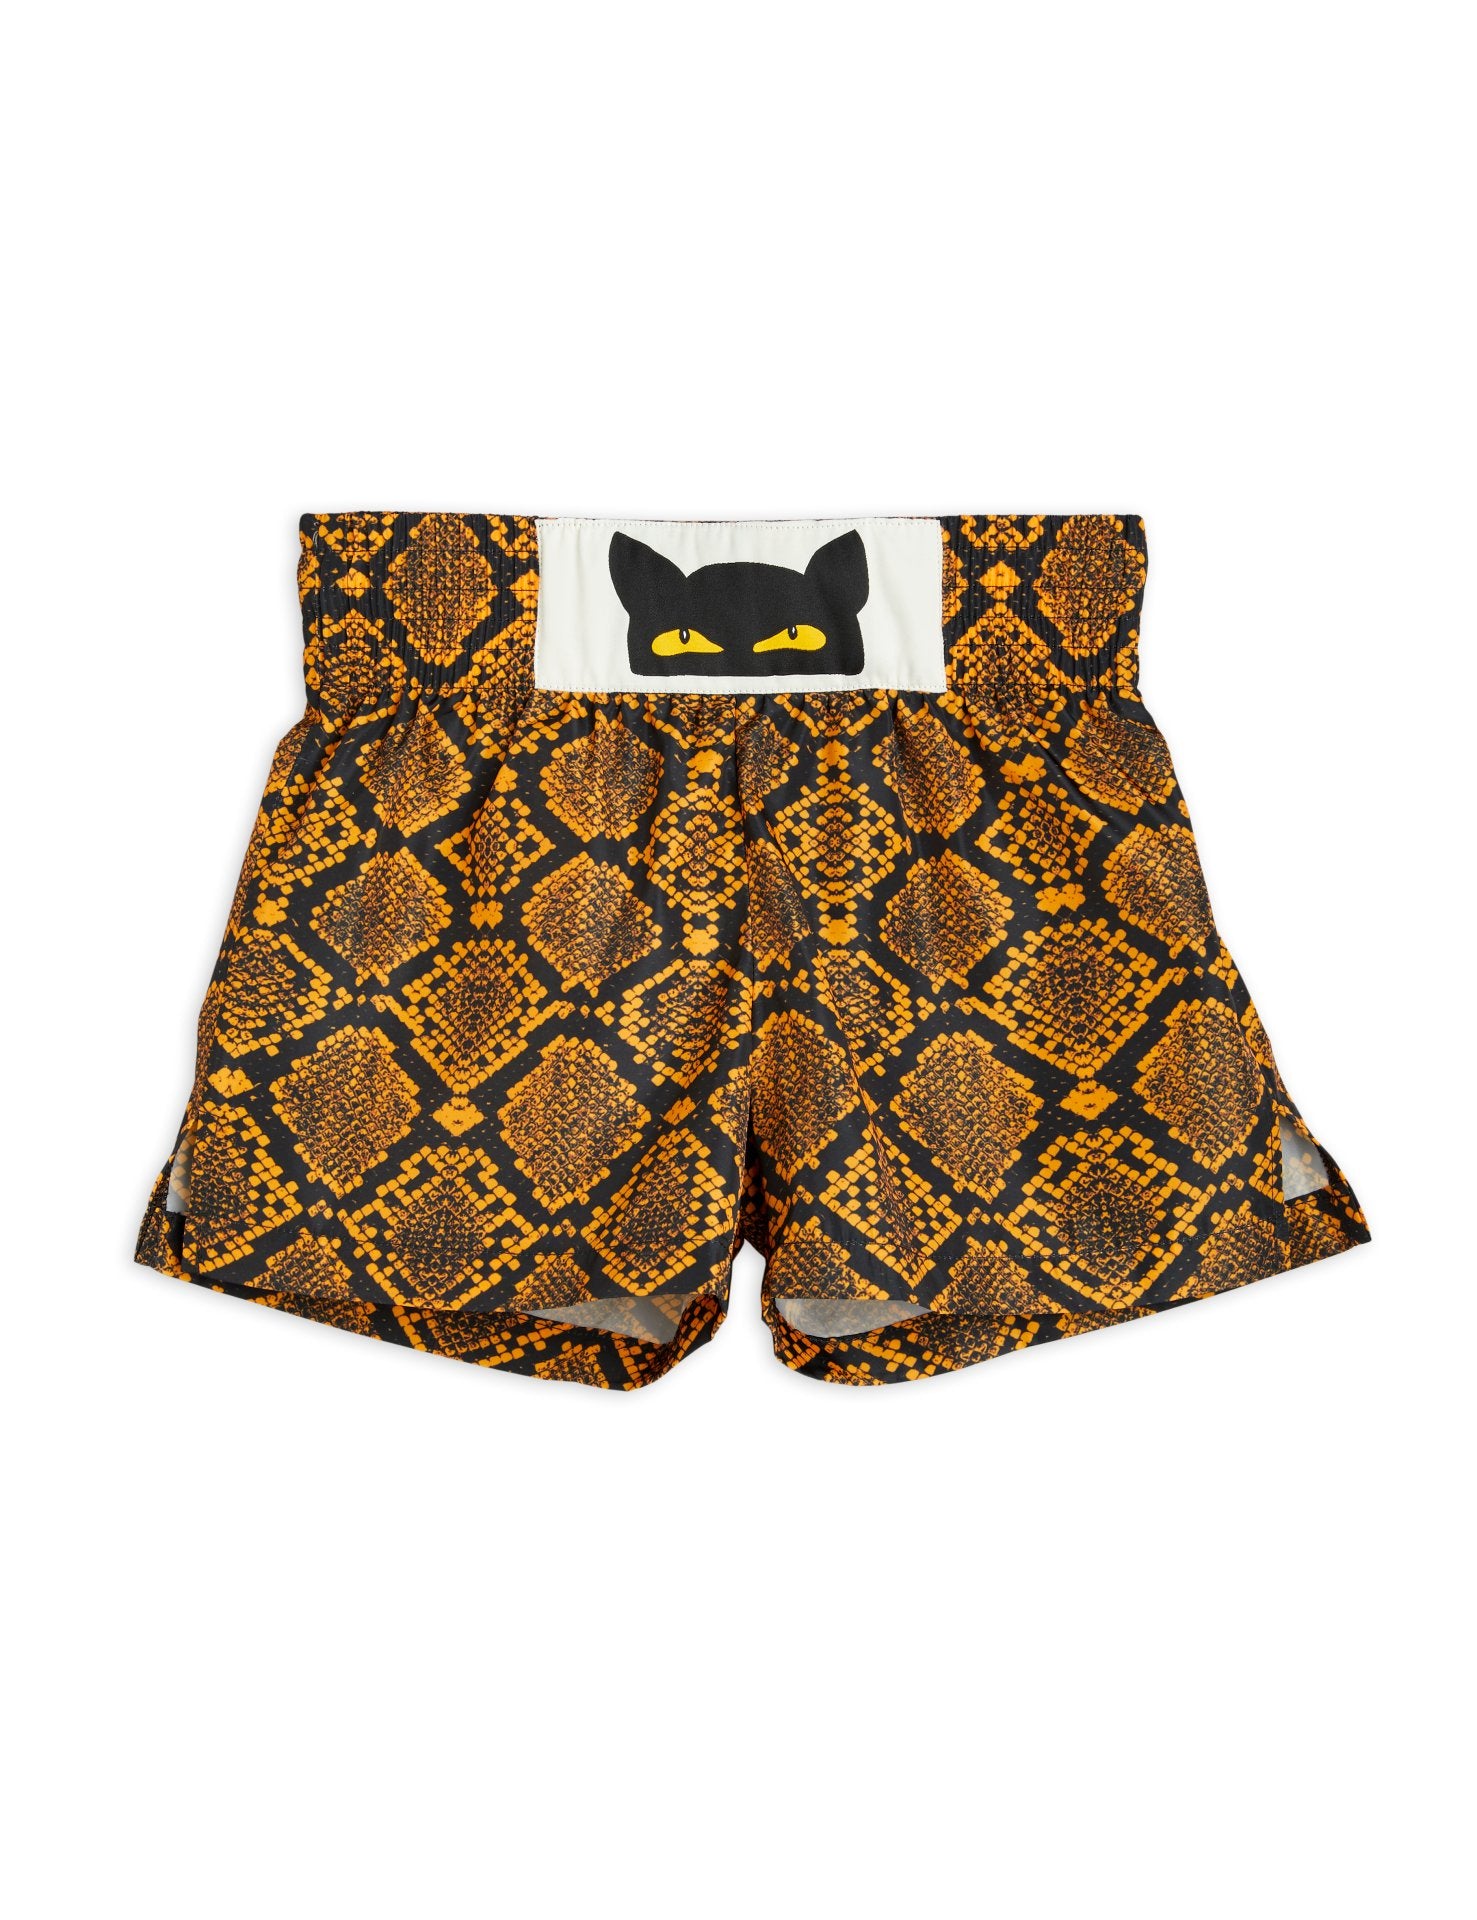 Snake skin Shorts brown - Clovis By Meiken